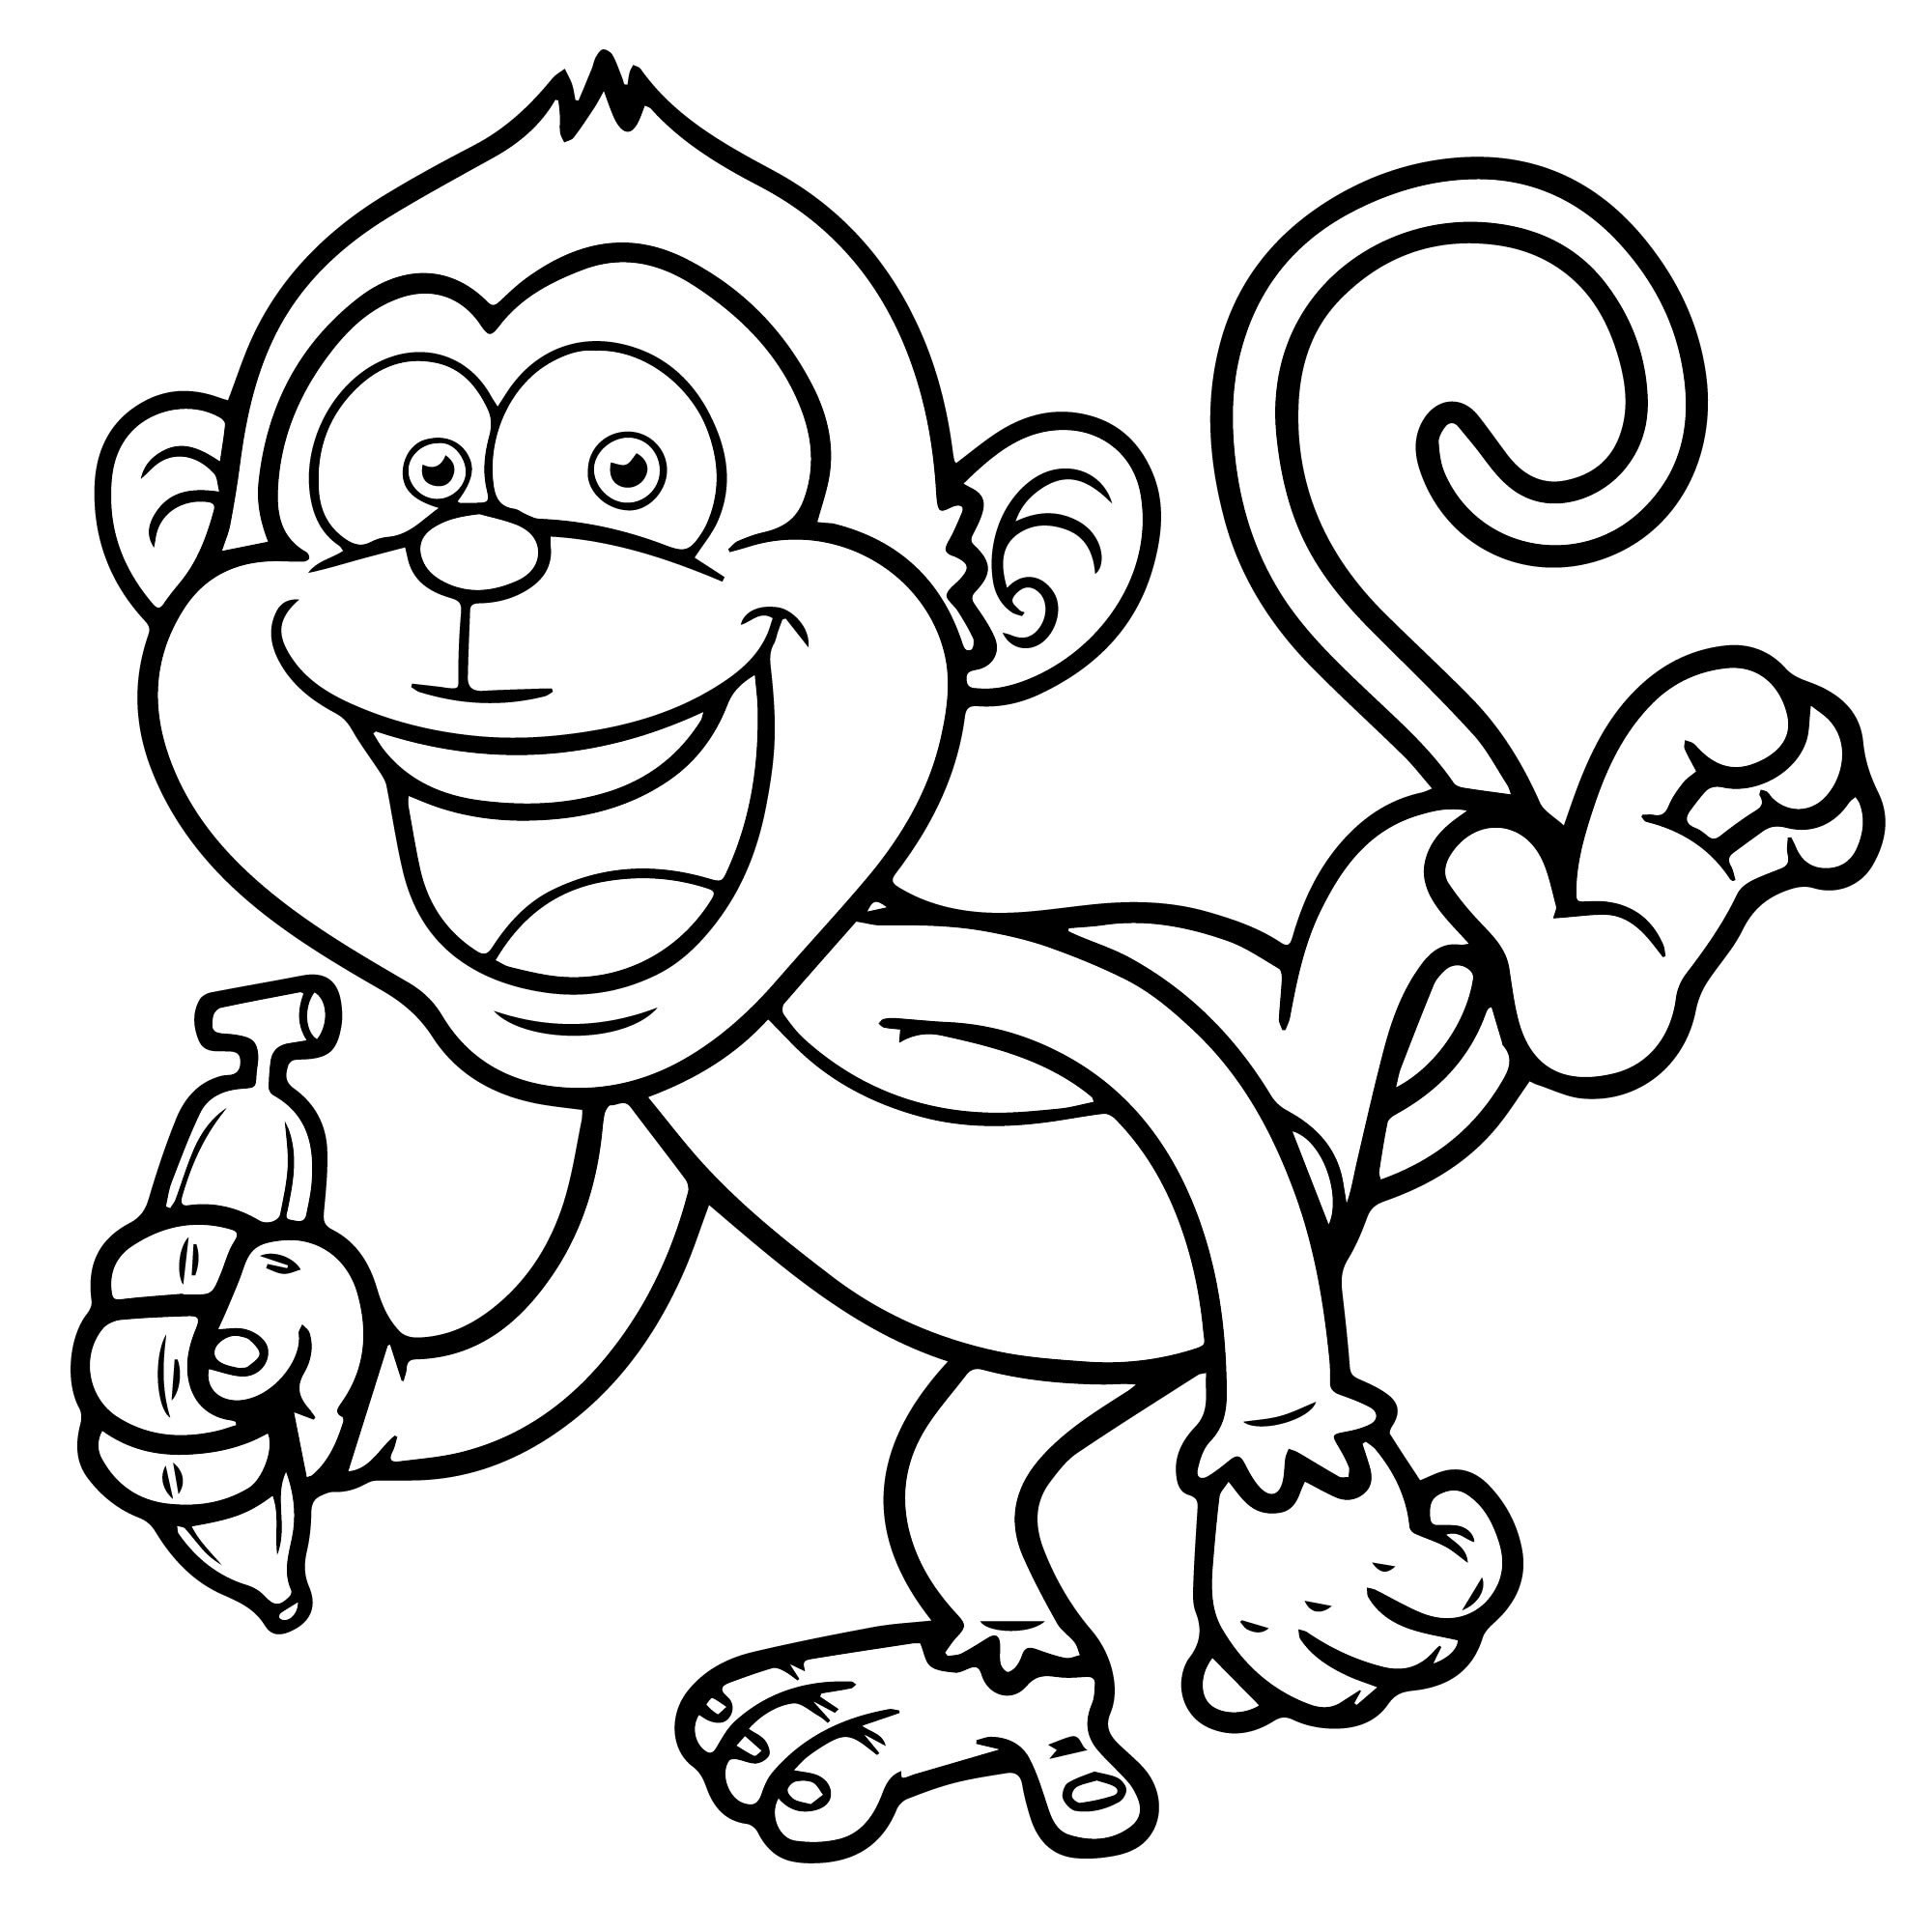 Раскраски с милыми животными для детей обезьяны раскраски для детей